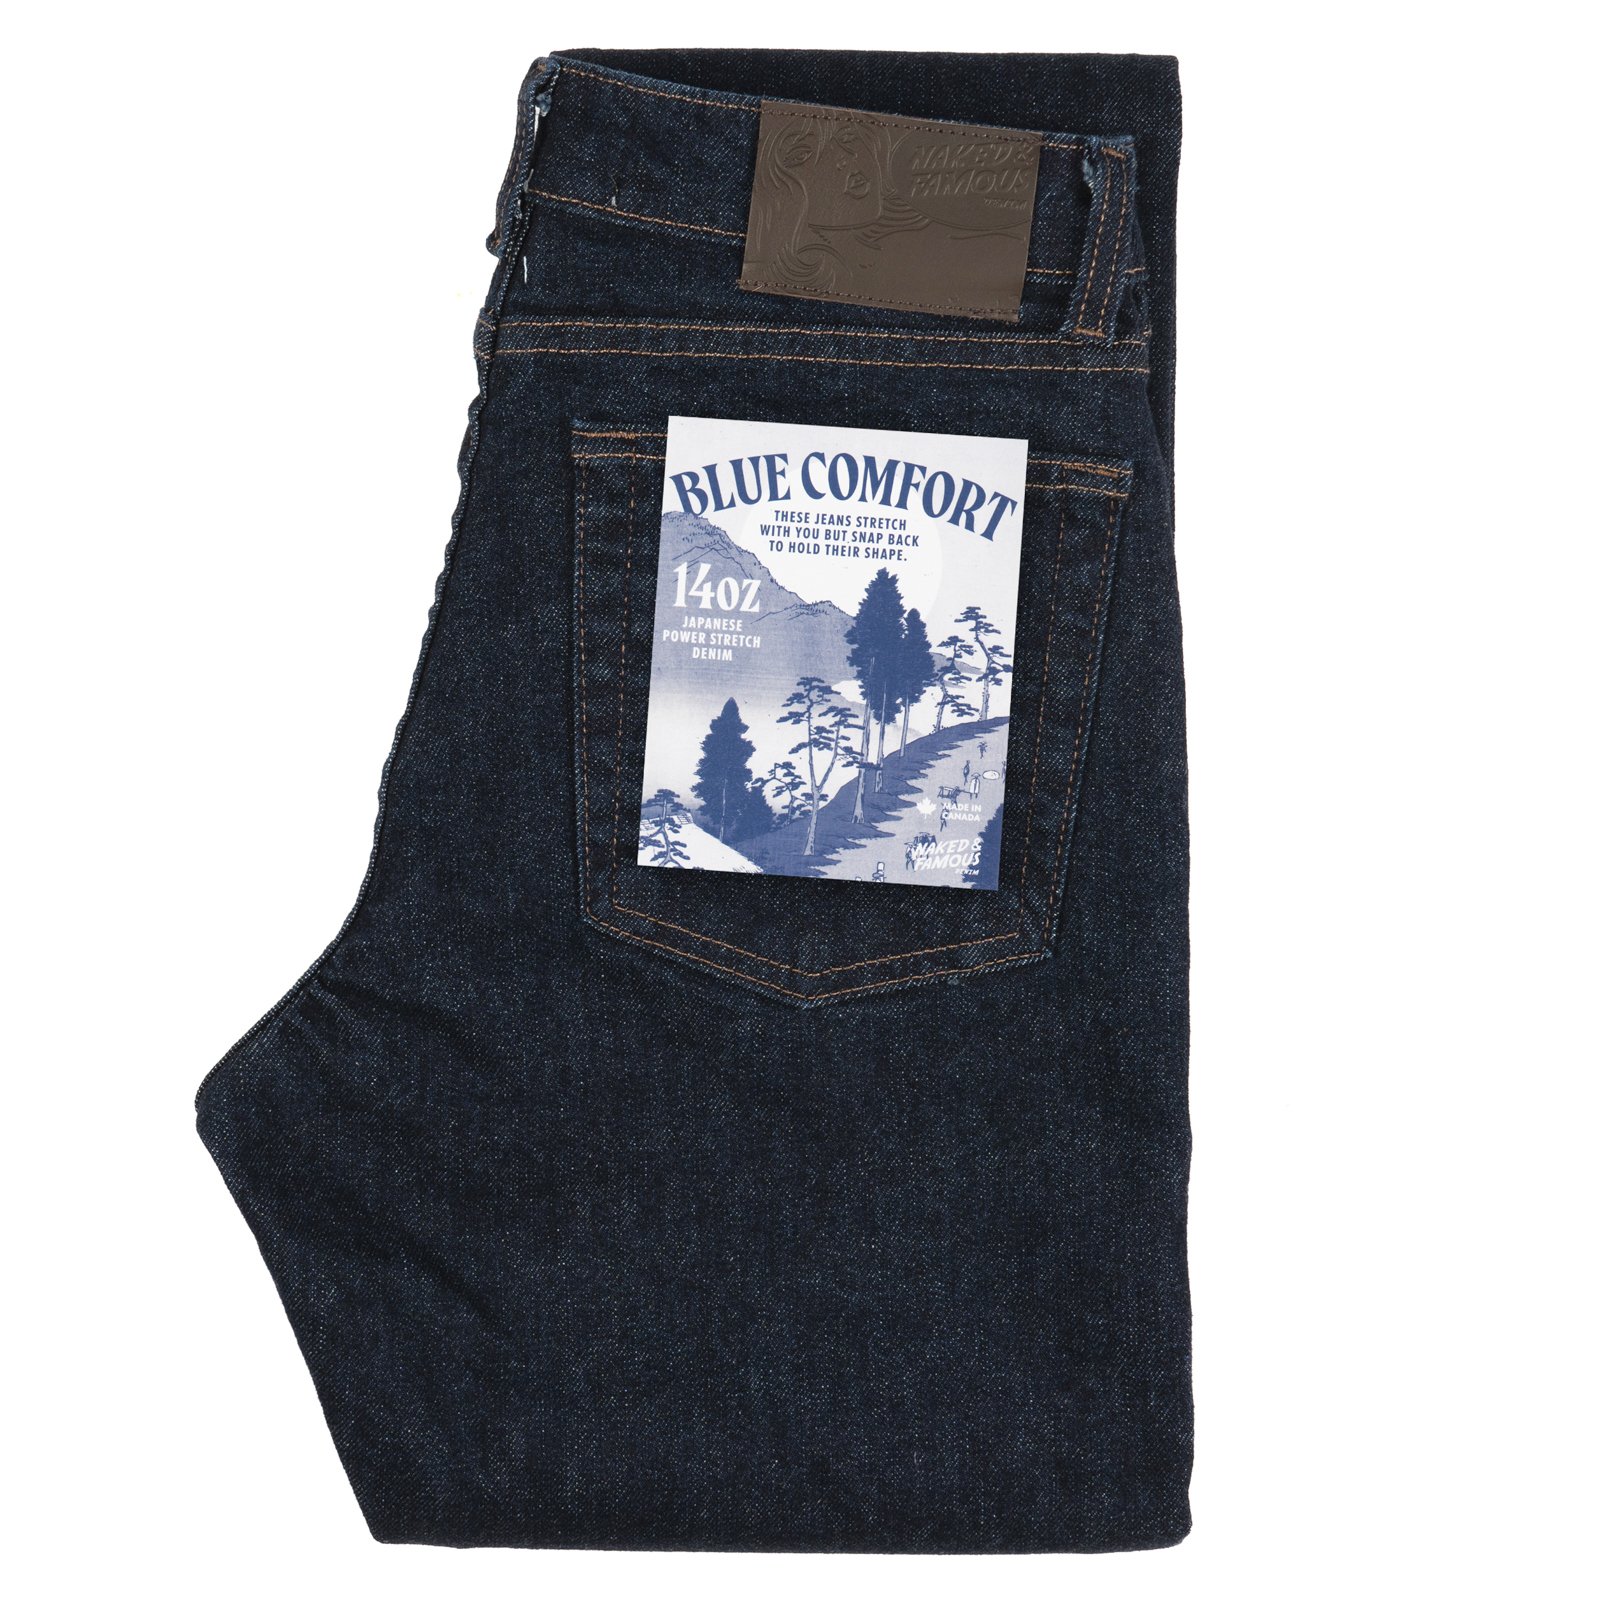  Women’s Blue Comfort jeans - folded 